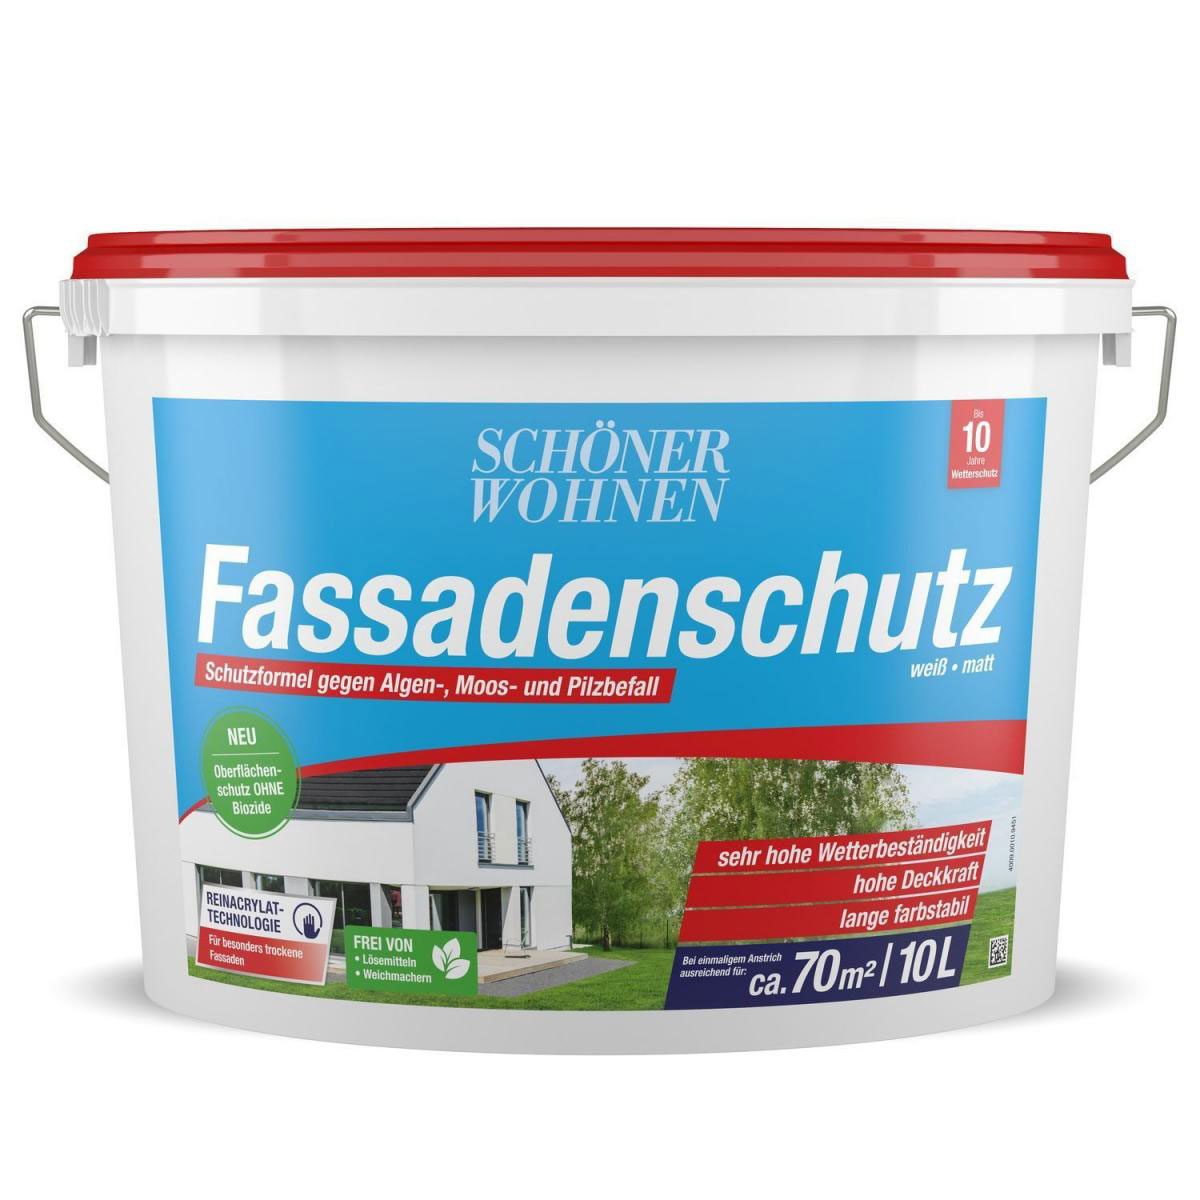 Reinacrylat-Fassadenschutz L 10 Wohnen 594039 Schöner | | Farbe 10 Weiß